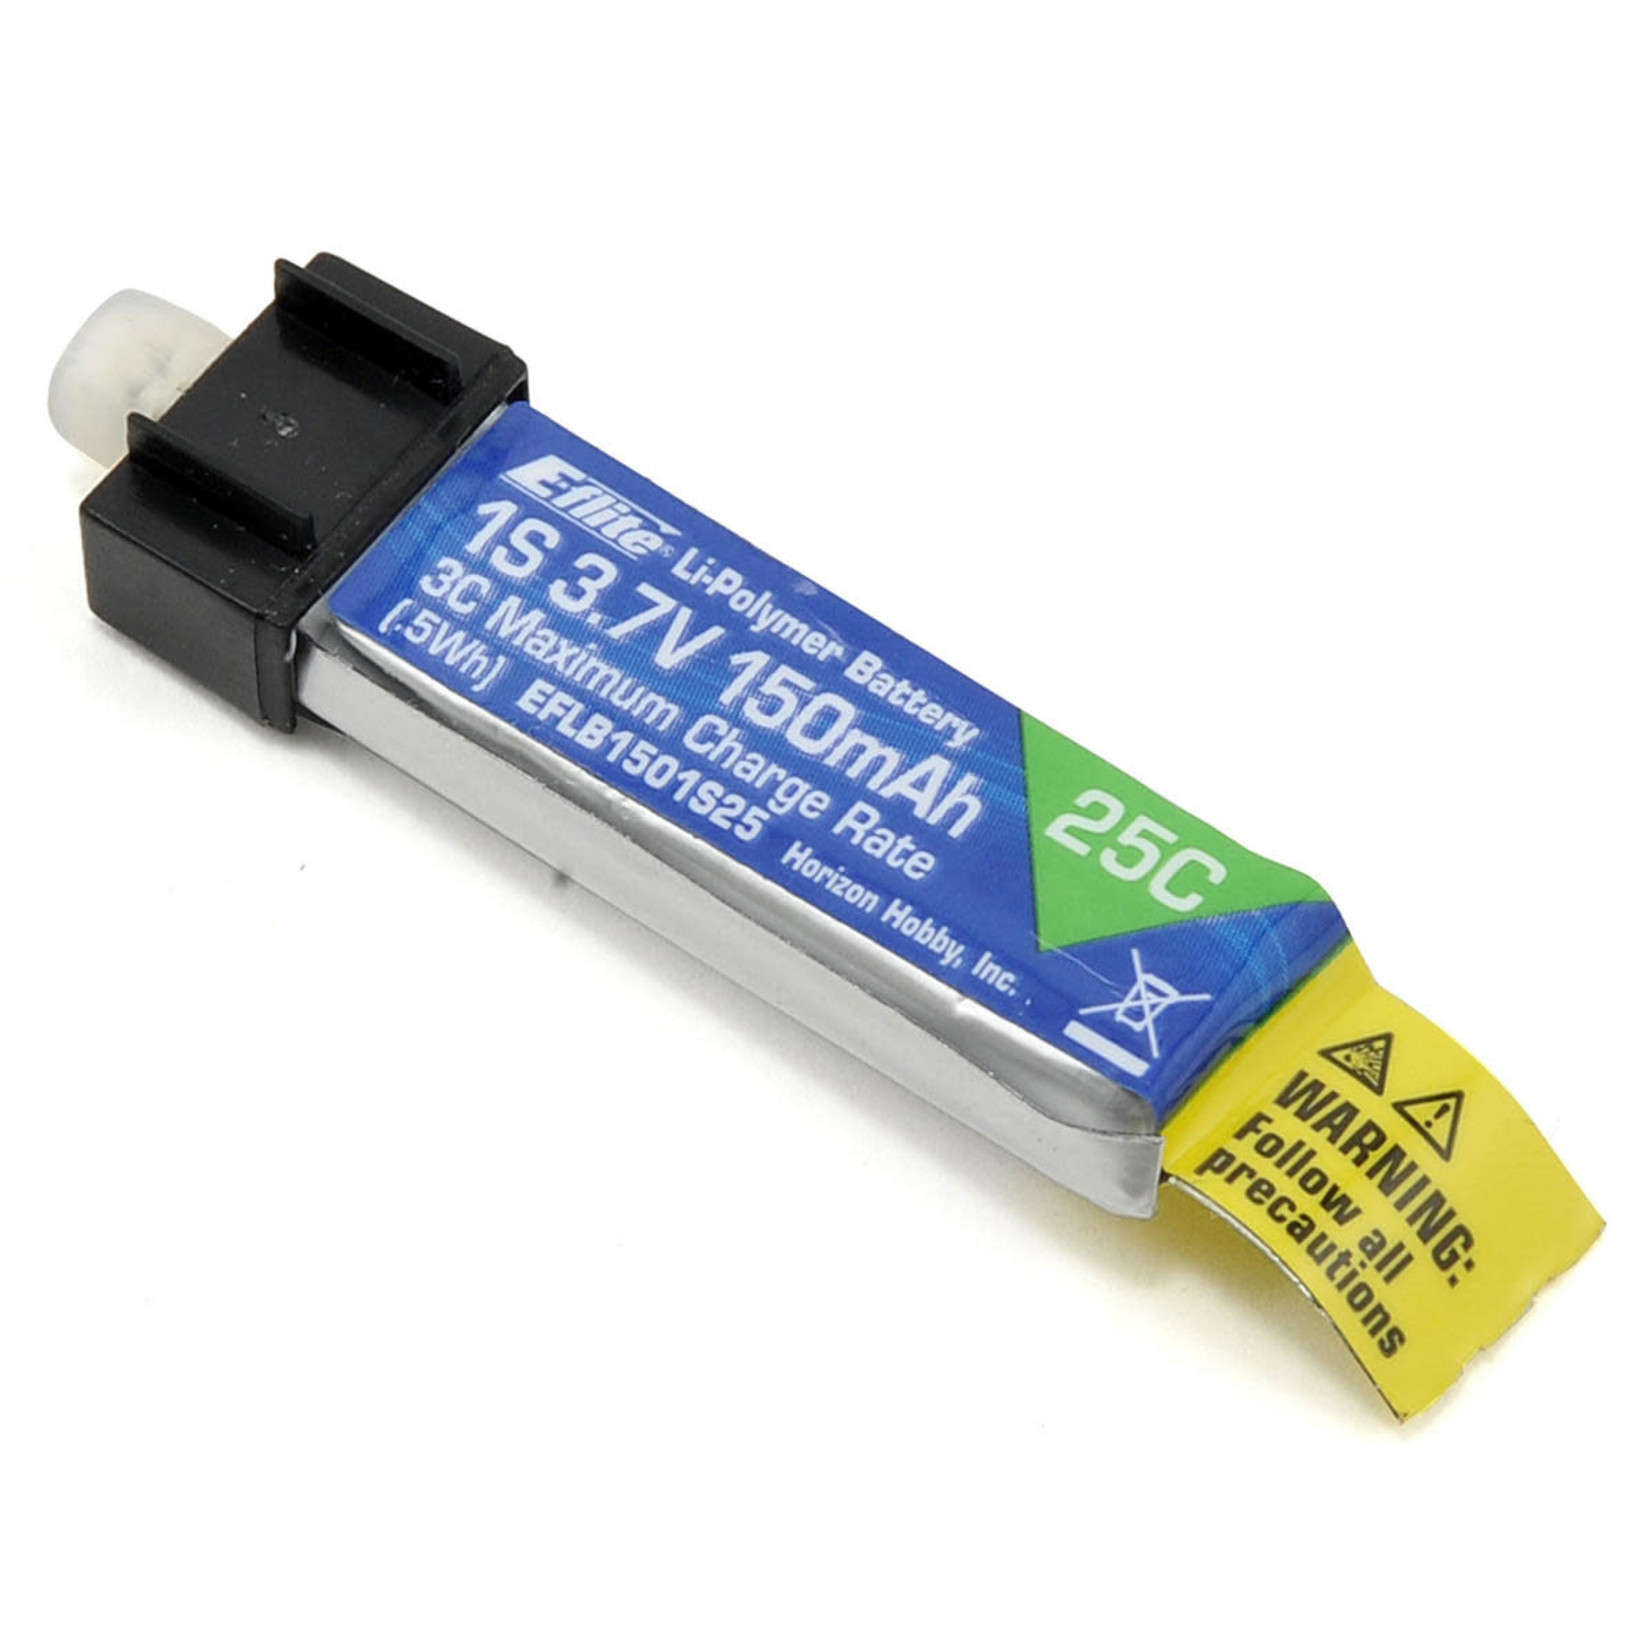 E-flite E-flite 1S LiPo Battery 25C (3.7V/150mAh) #EFLB1501S25